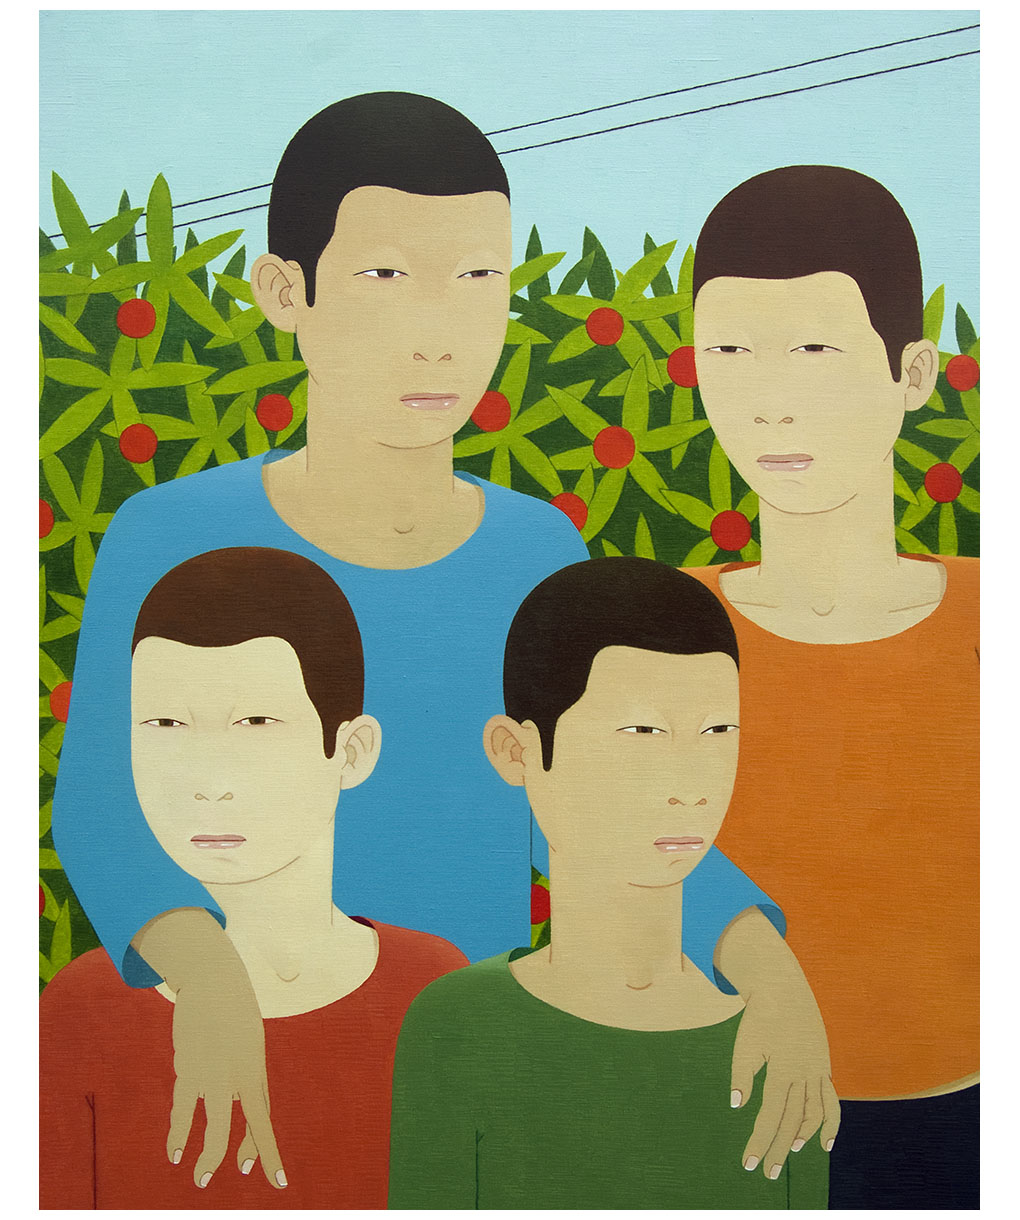 한 사람- 가족같은 116.8cm x 91cm oil on canvas 2013.jpg